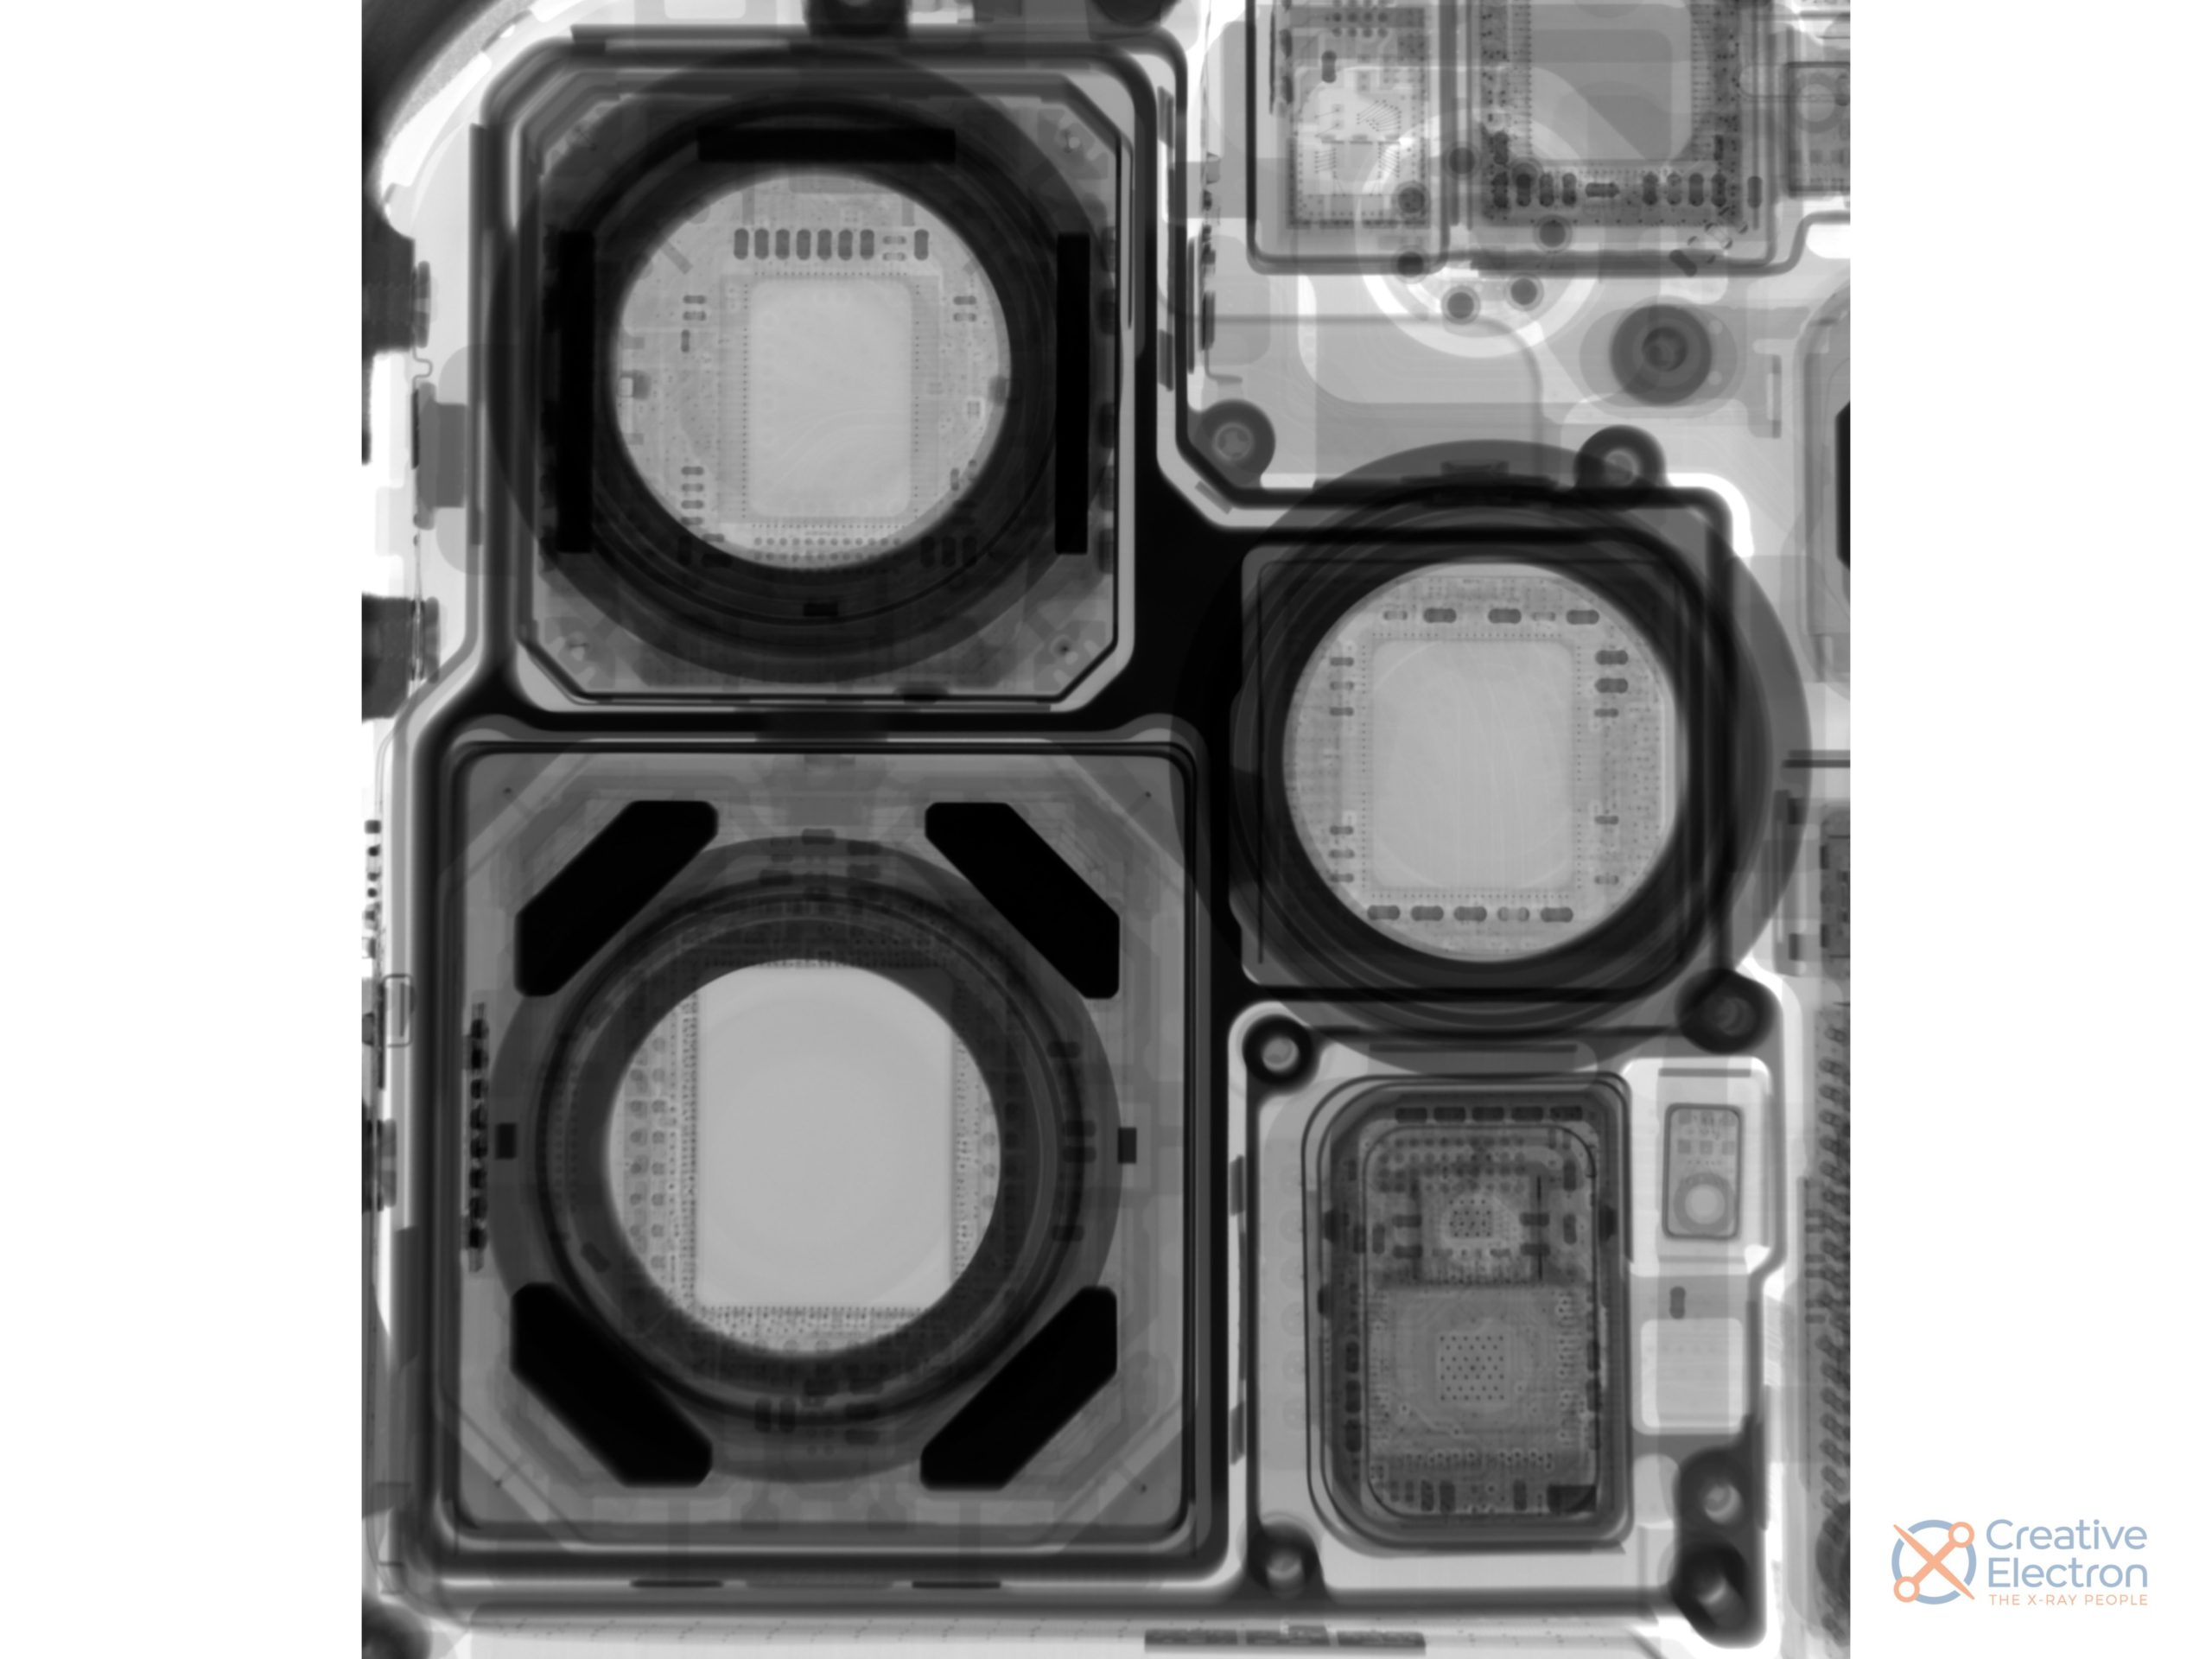 Módulos de cámara del iPhone 12 Pro Max vistos a rayos X